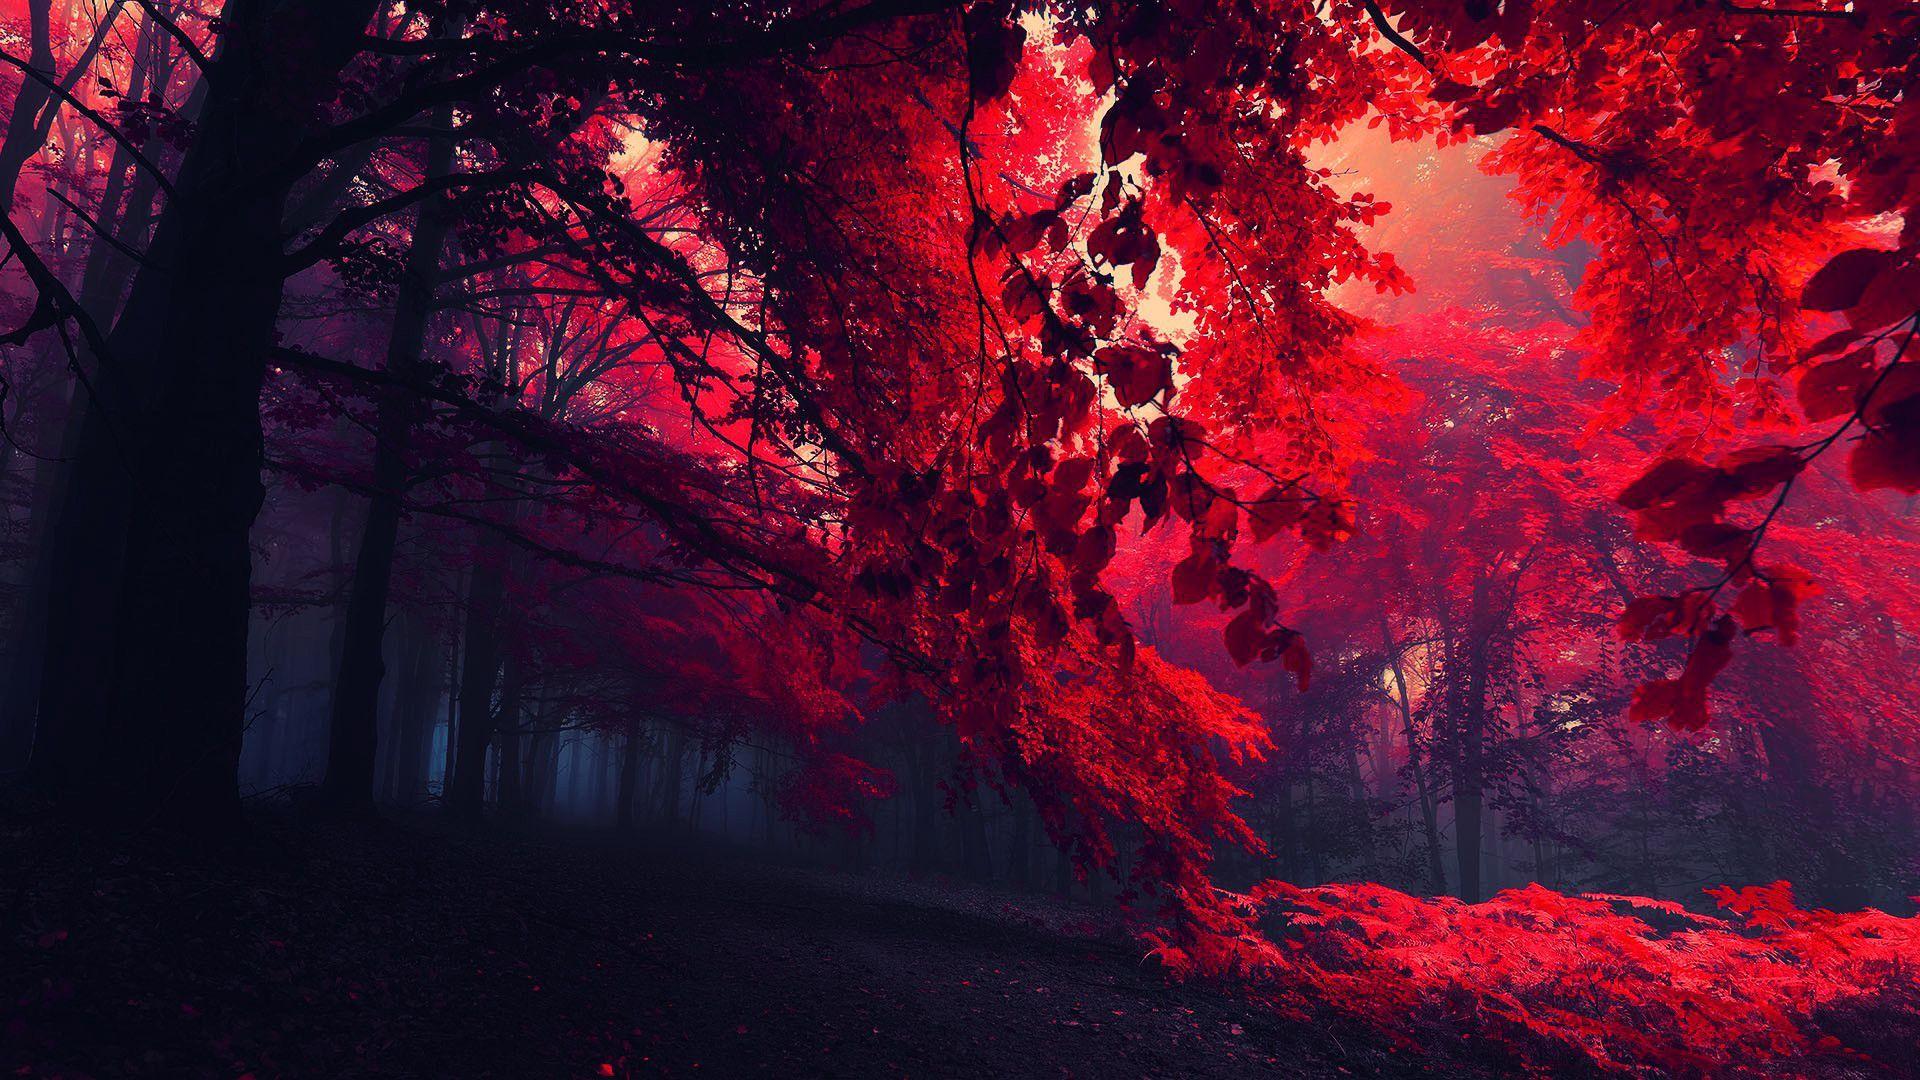 Hình nền cây đỏ: Với những thước phim của cây đỏ rực, bạn sẽ được trải nghiệm sự phong phú và ấn tượng về độ bền vững của thiên nhiên. Hãy để bức ảnh này đưa bạn đến những khoảnh khắc yên tĩnh và sự đơn giản của cuộc sống.